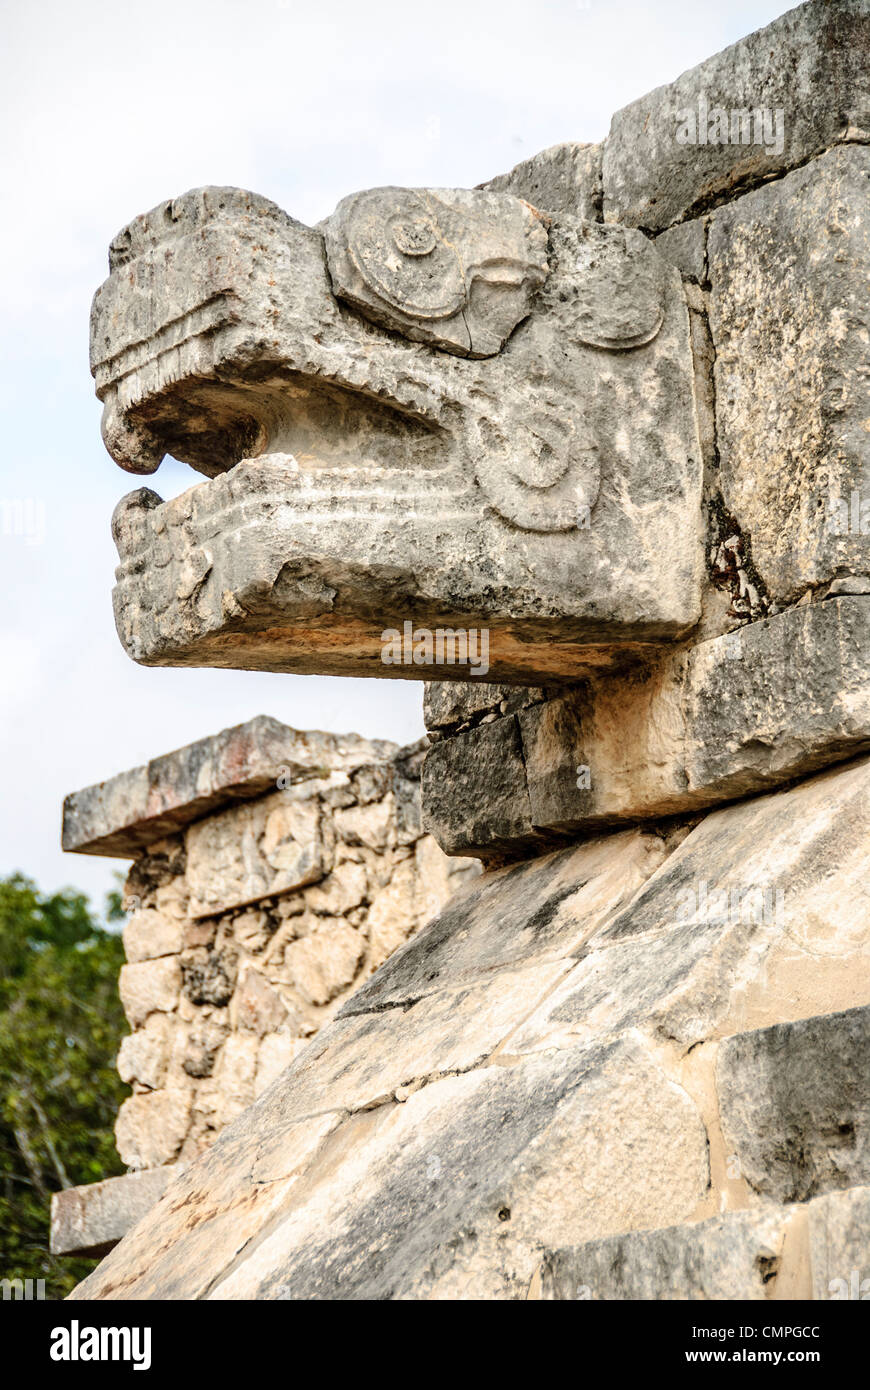 CHICHEN ITZA, Mexico - Jaguar head carved in stone at Chichen Itza Mayan civilizations ruins in Mexico. Stock Photo